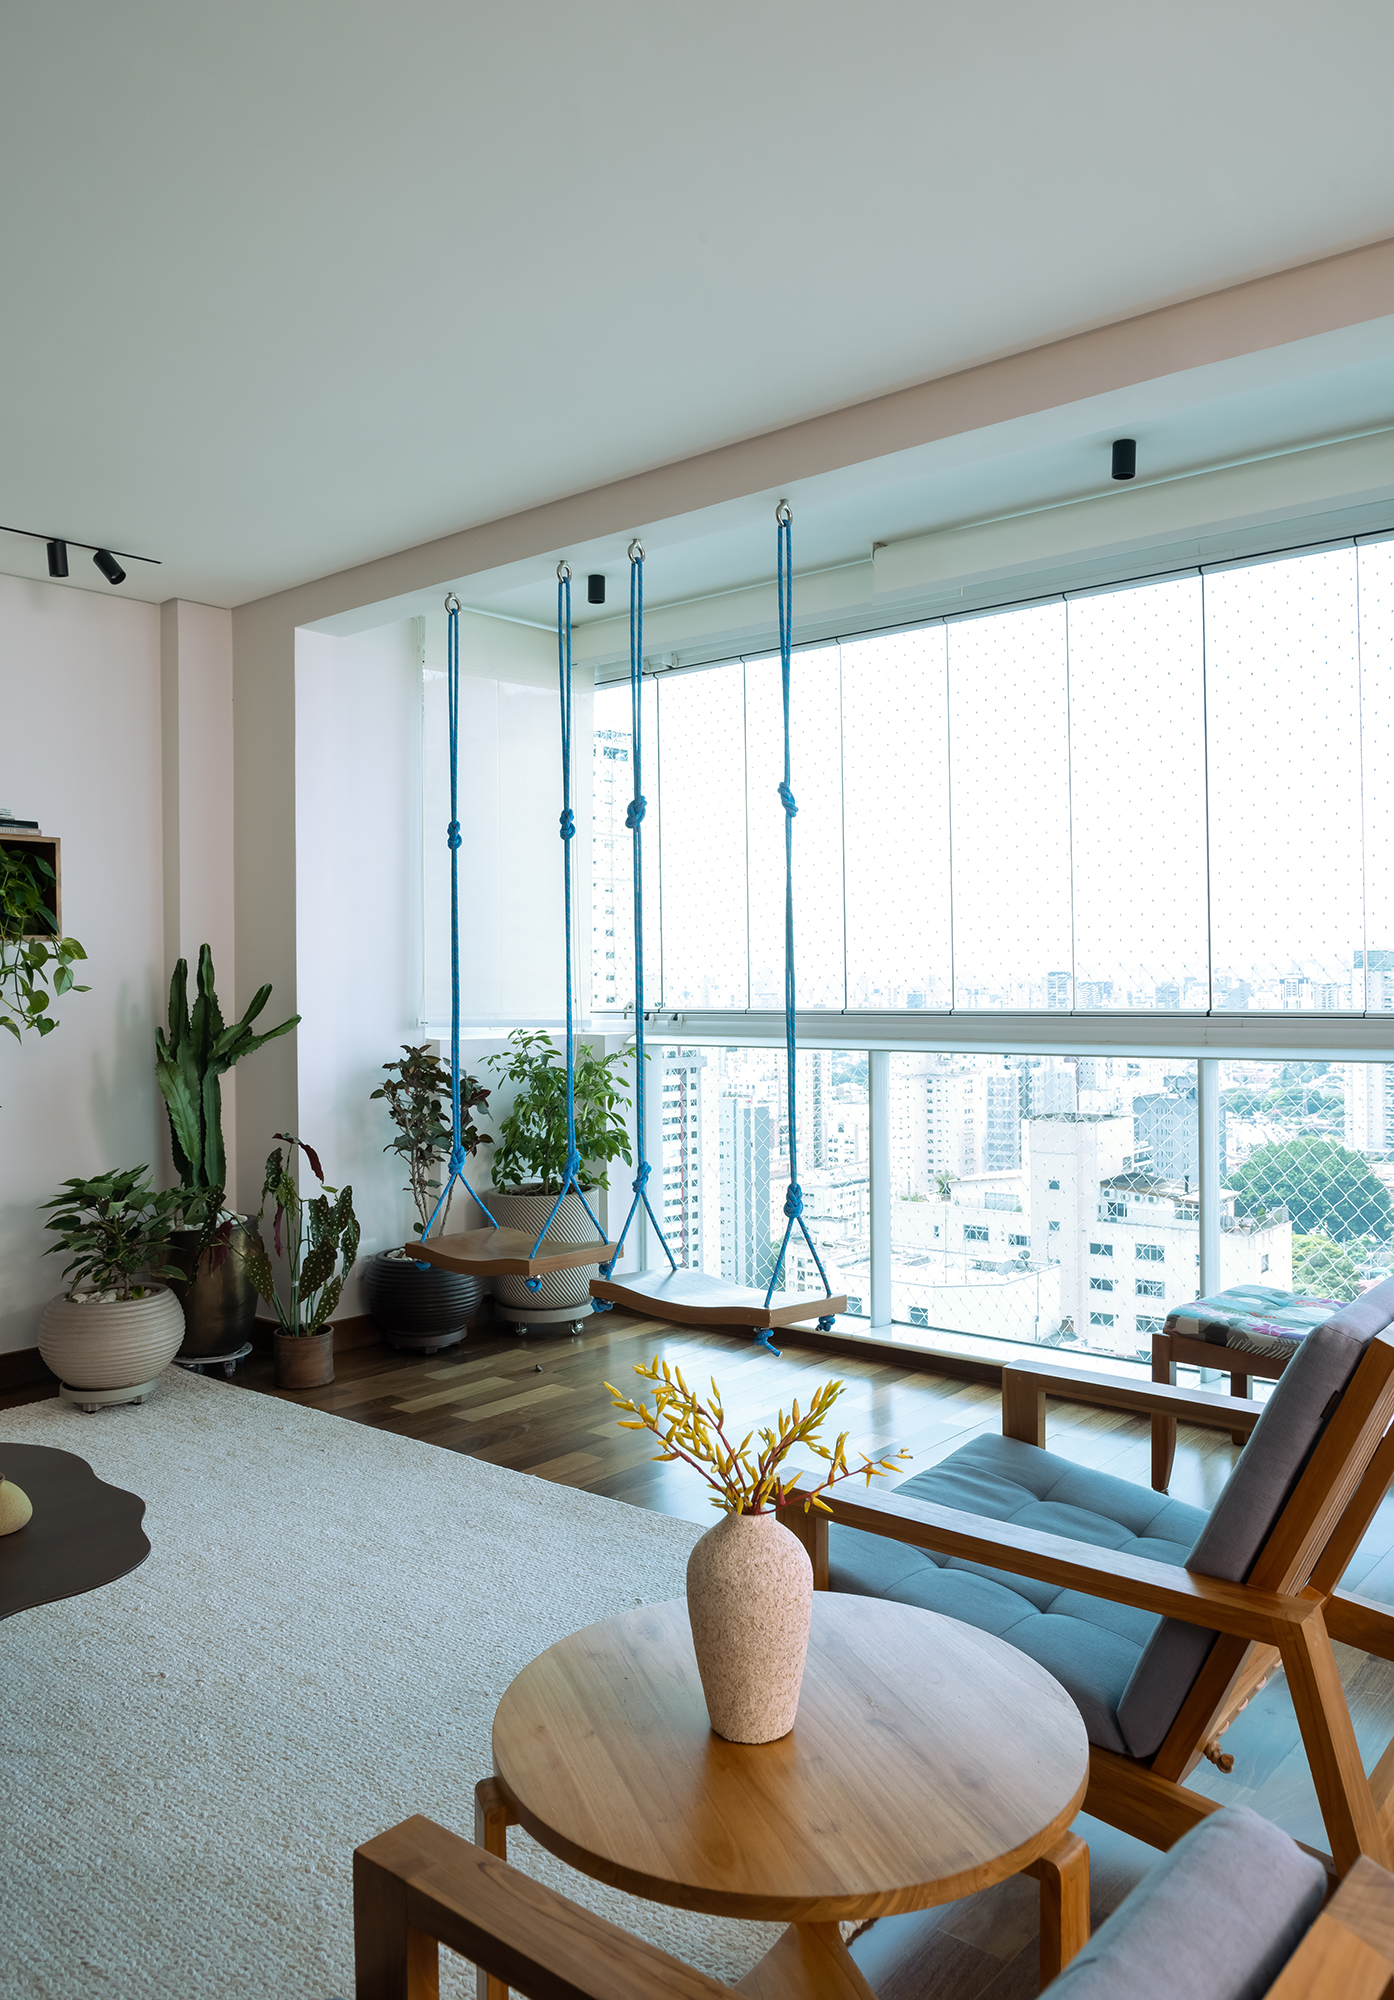 Apartamento de 188 m² ganha dois cooktops na cozinha e balanços na sala, Projeto Raízes Arquitetos. Na foto, varanda integrada com balanços.